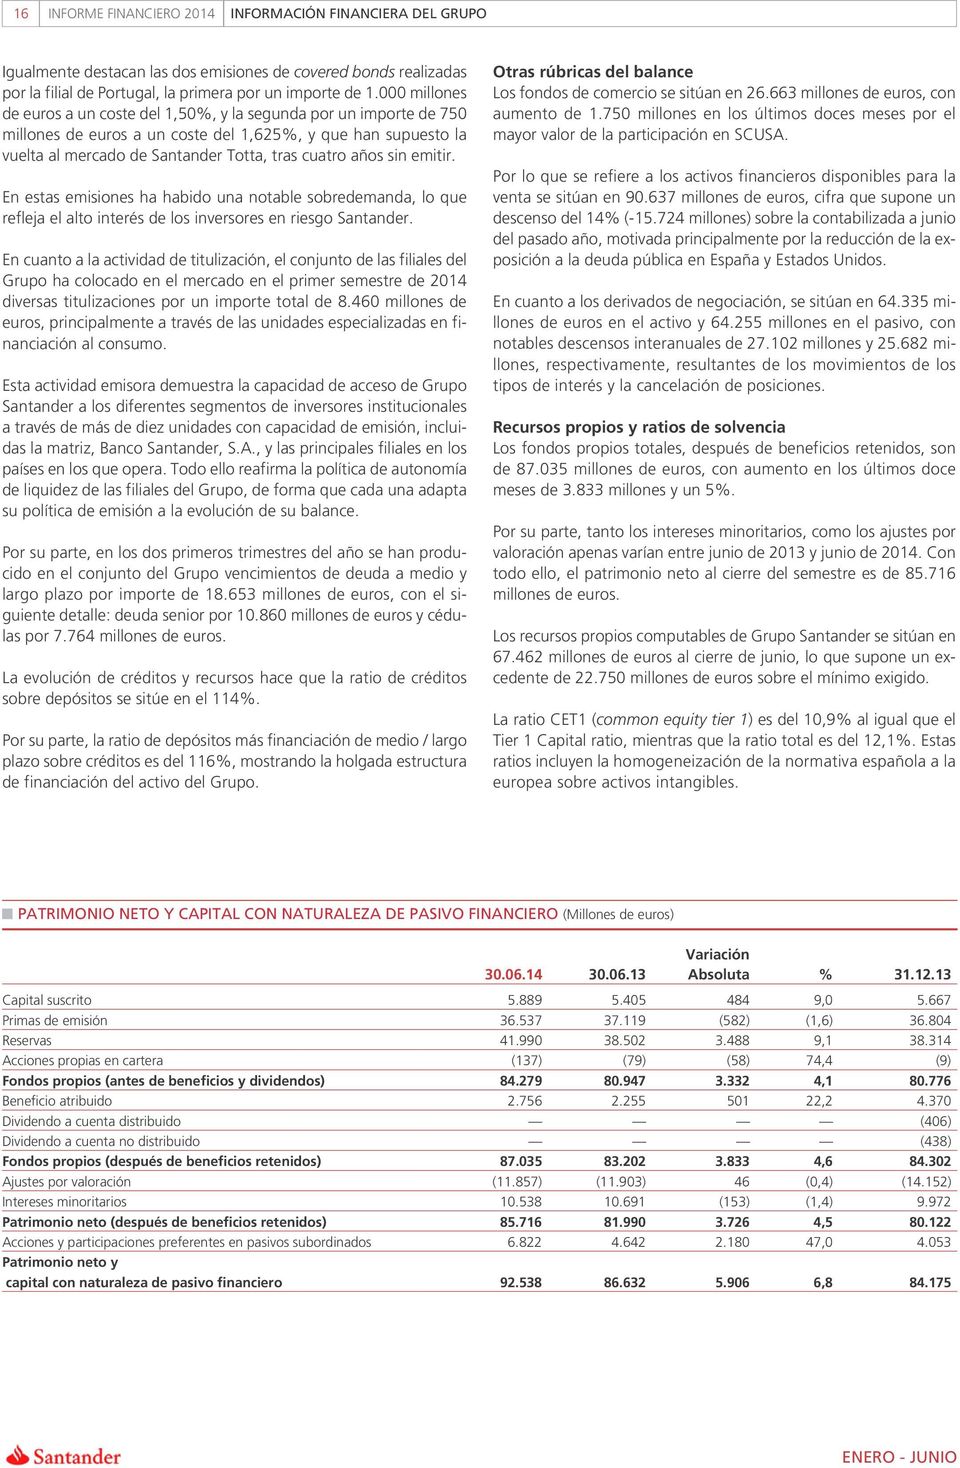 sin emitir. En estas emisiones ha habido una notable sobredemanda, lo que refleja el alto interés de los inversores en riesgo Santander.